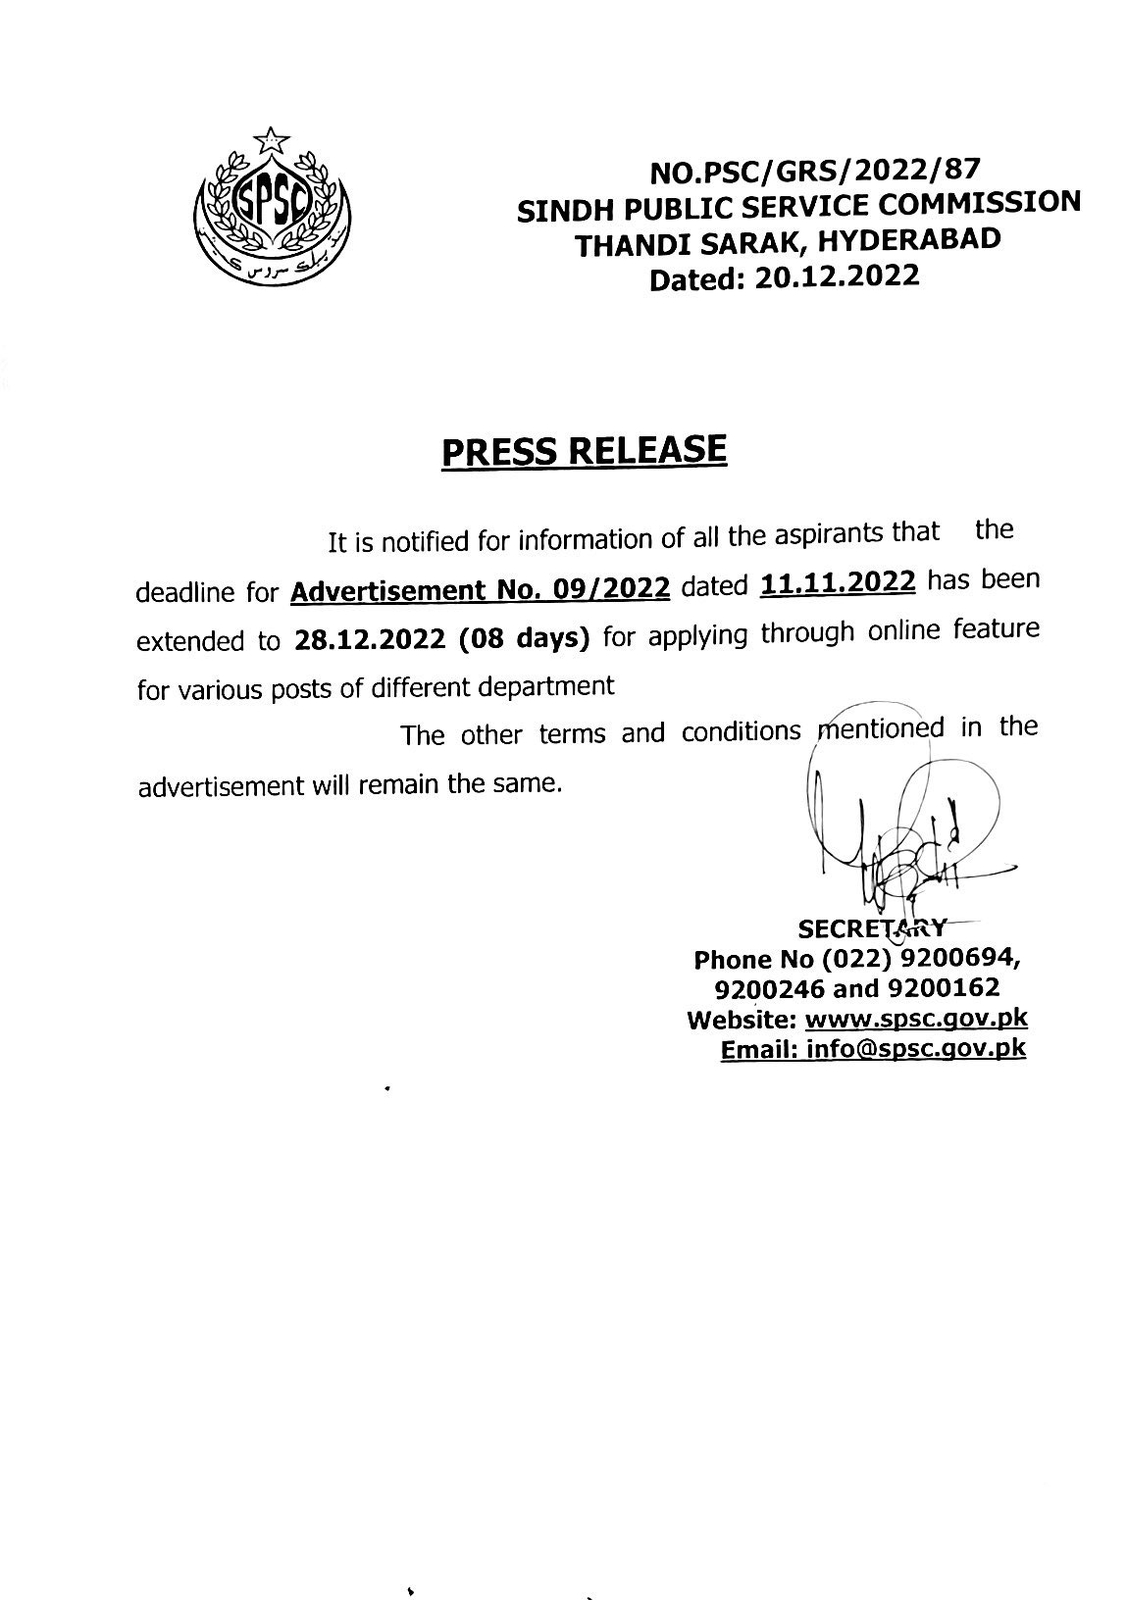 Sindh Public Service Commission SPSC Jobs 2023 Online Apply